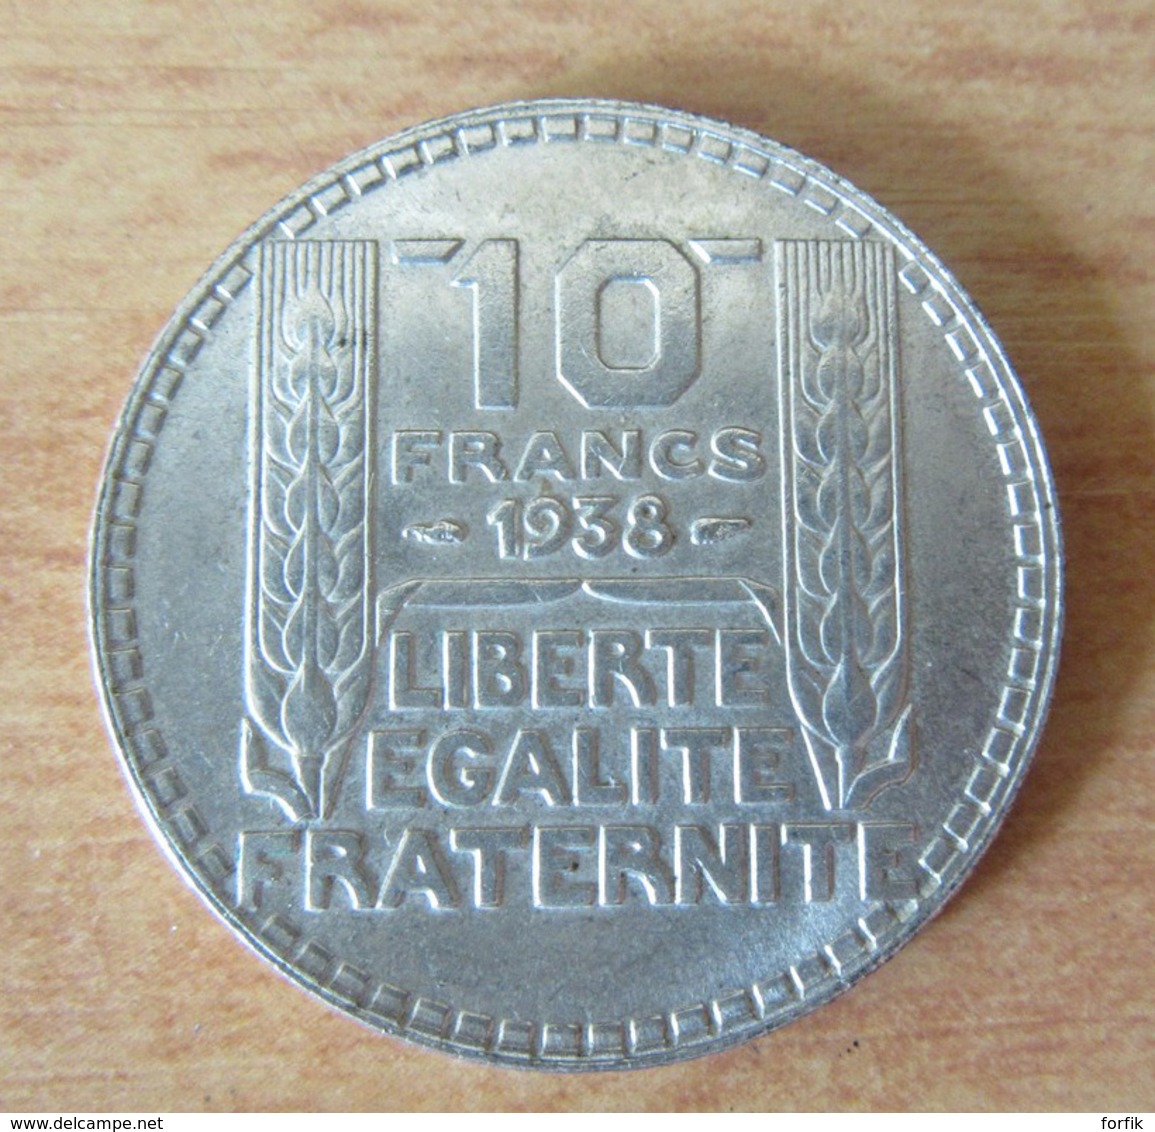 France - Lot de 4 Monnaies en argent - 10 Francs Hercule 1966 / 1967, 10 et 20 Francs Turin 1938 - Etat SUP